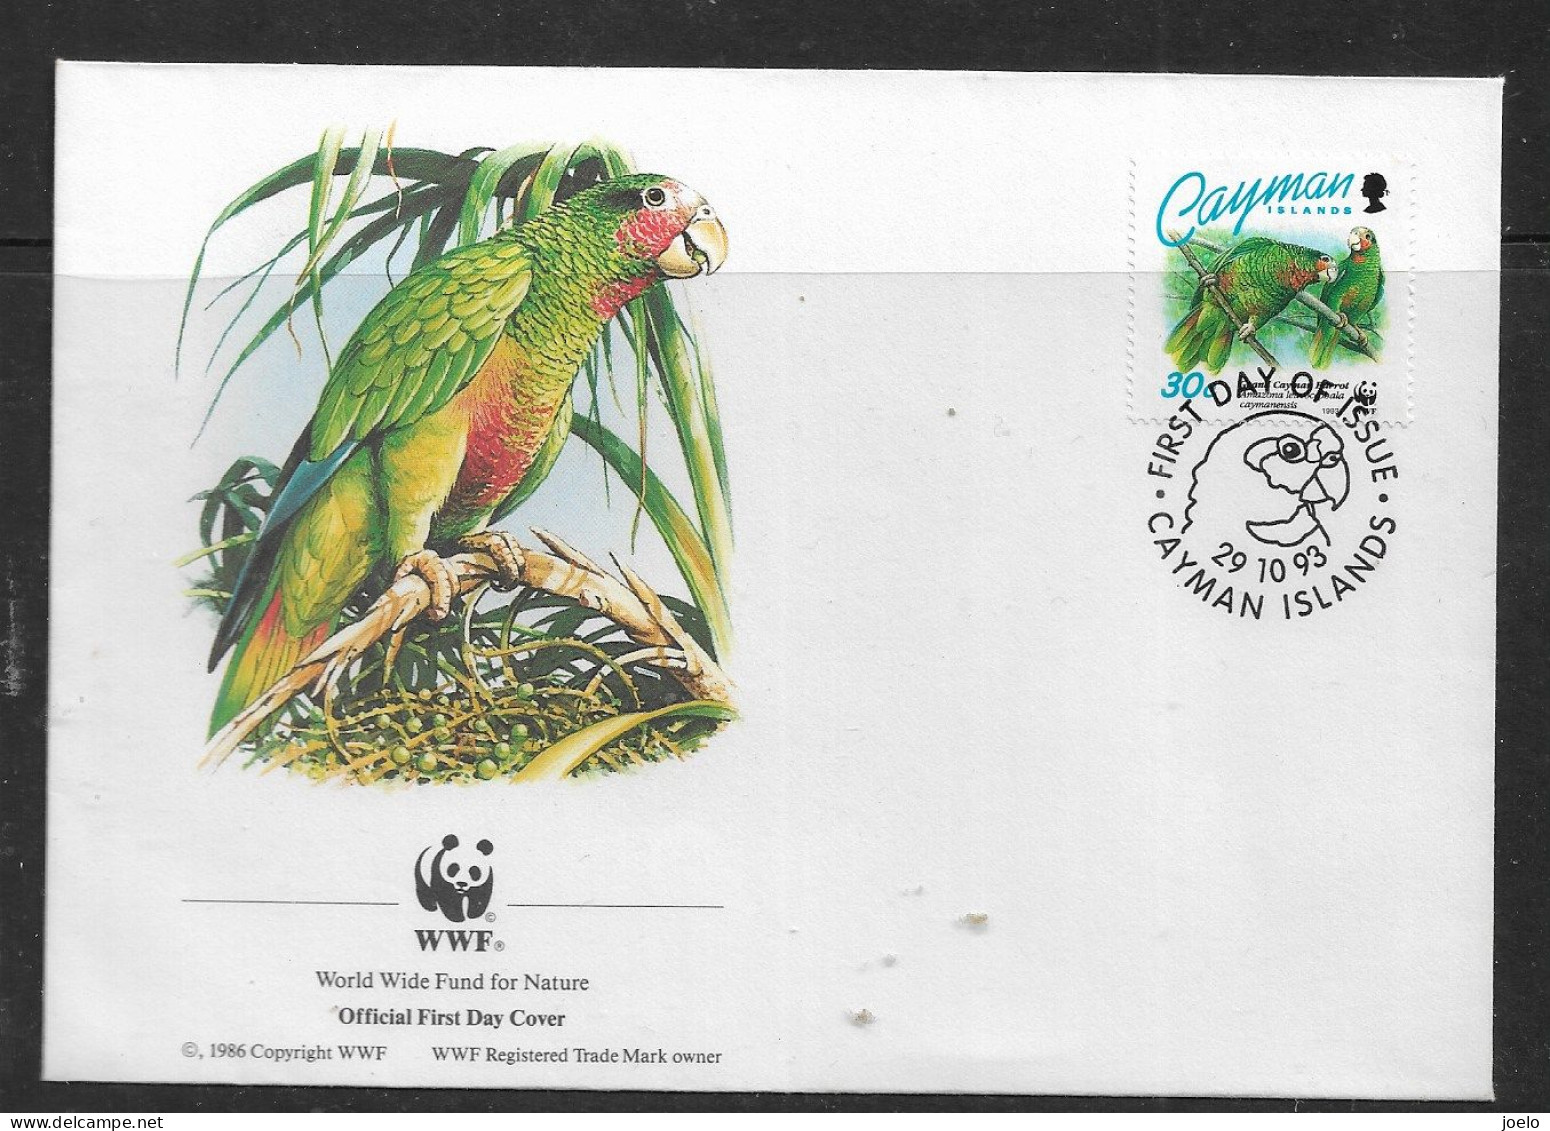 CAYMAN ISLAND 1993 PARROTS WWF FDC - Kaimaninseln